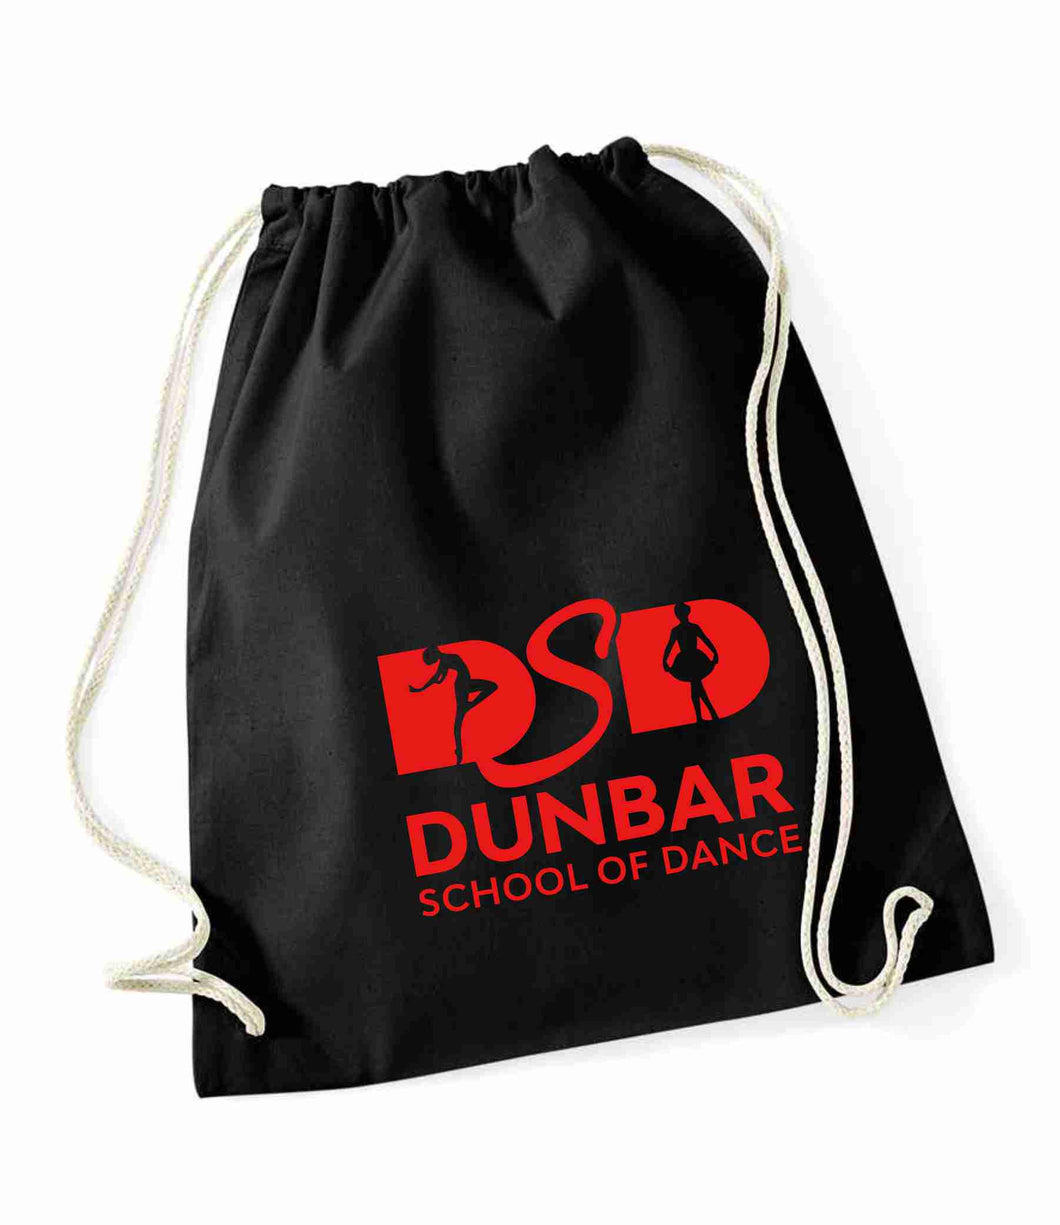 Dunbar School of Dancing Gym Sac